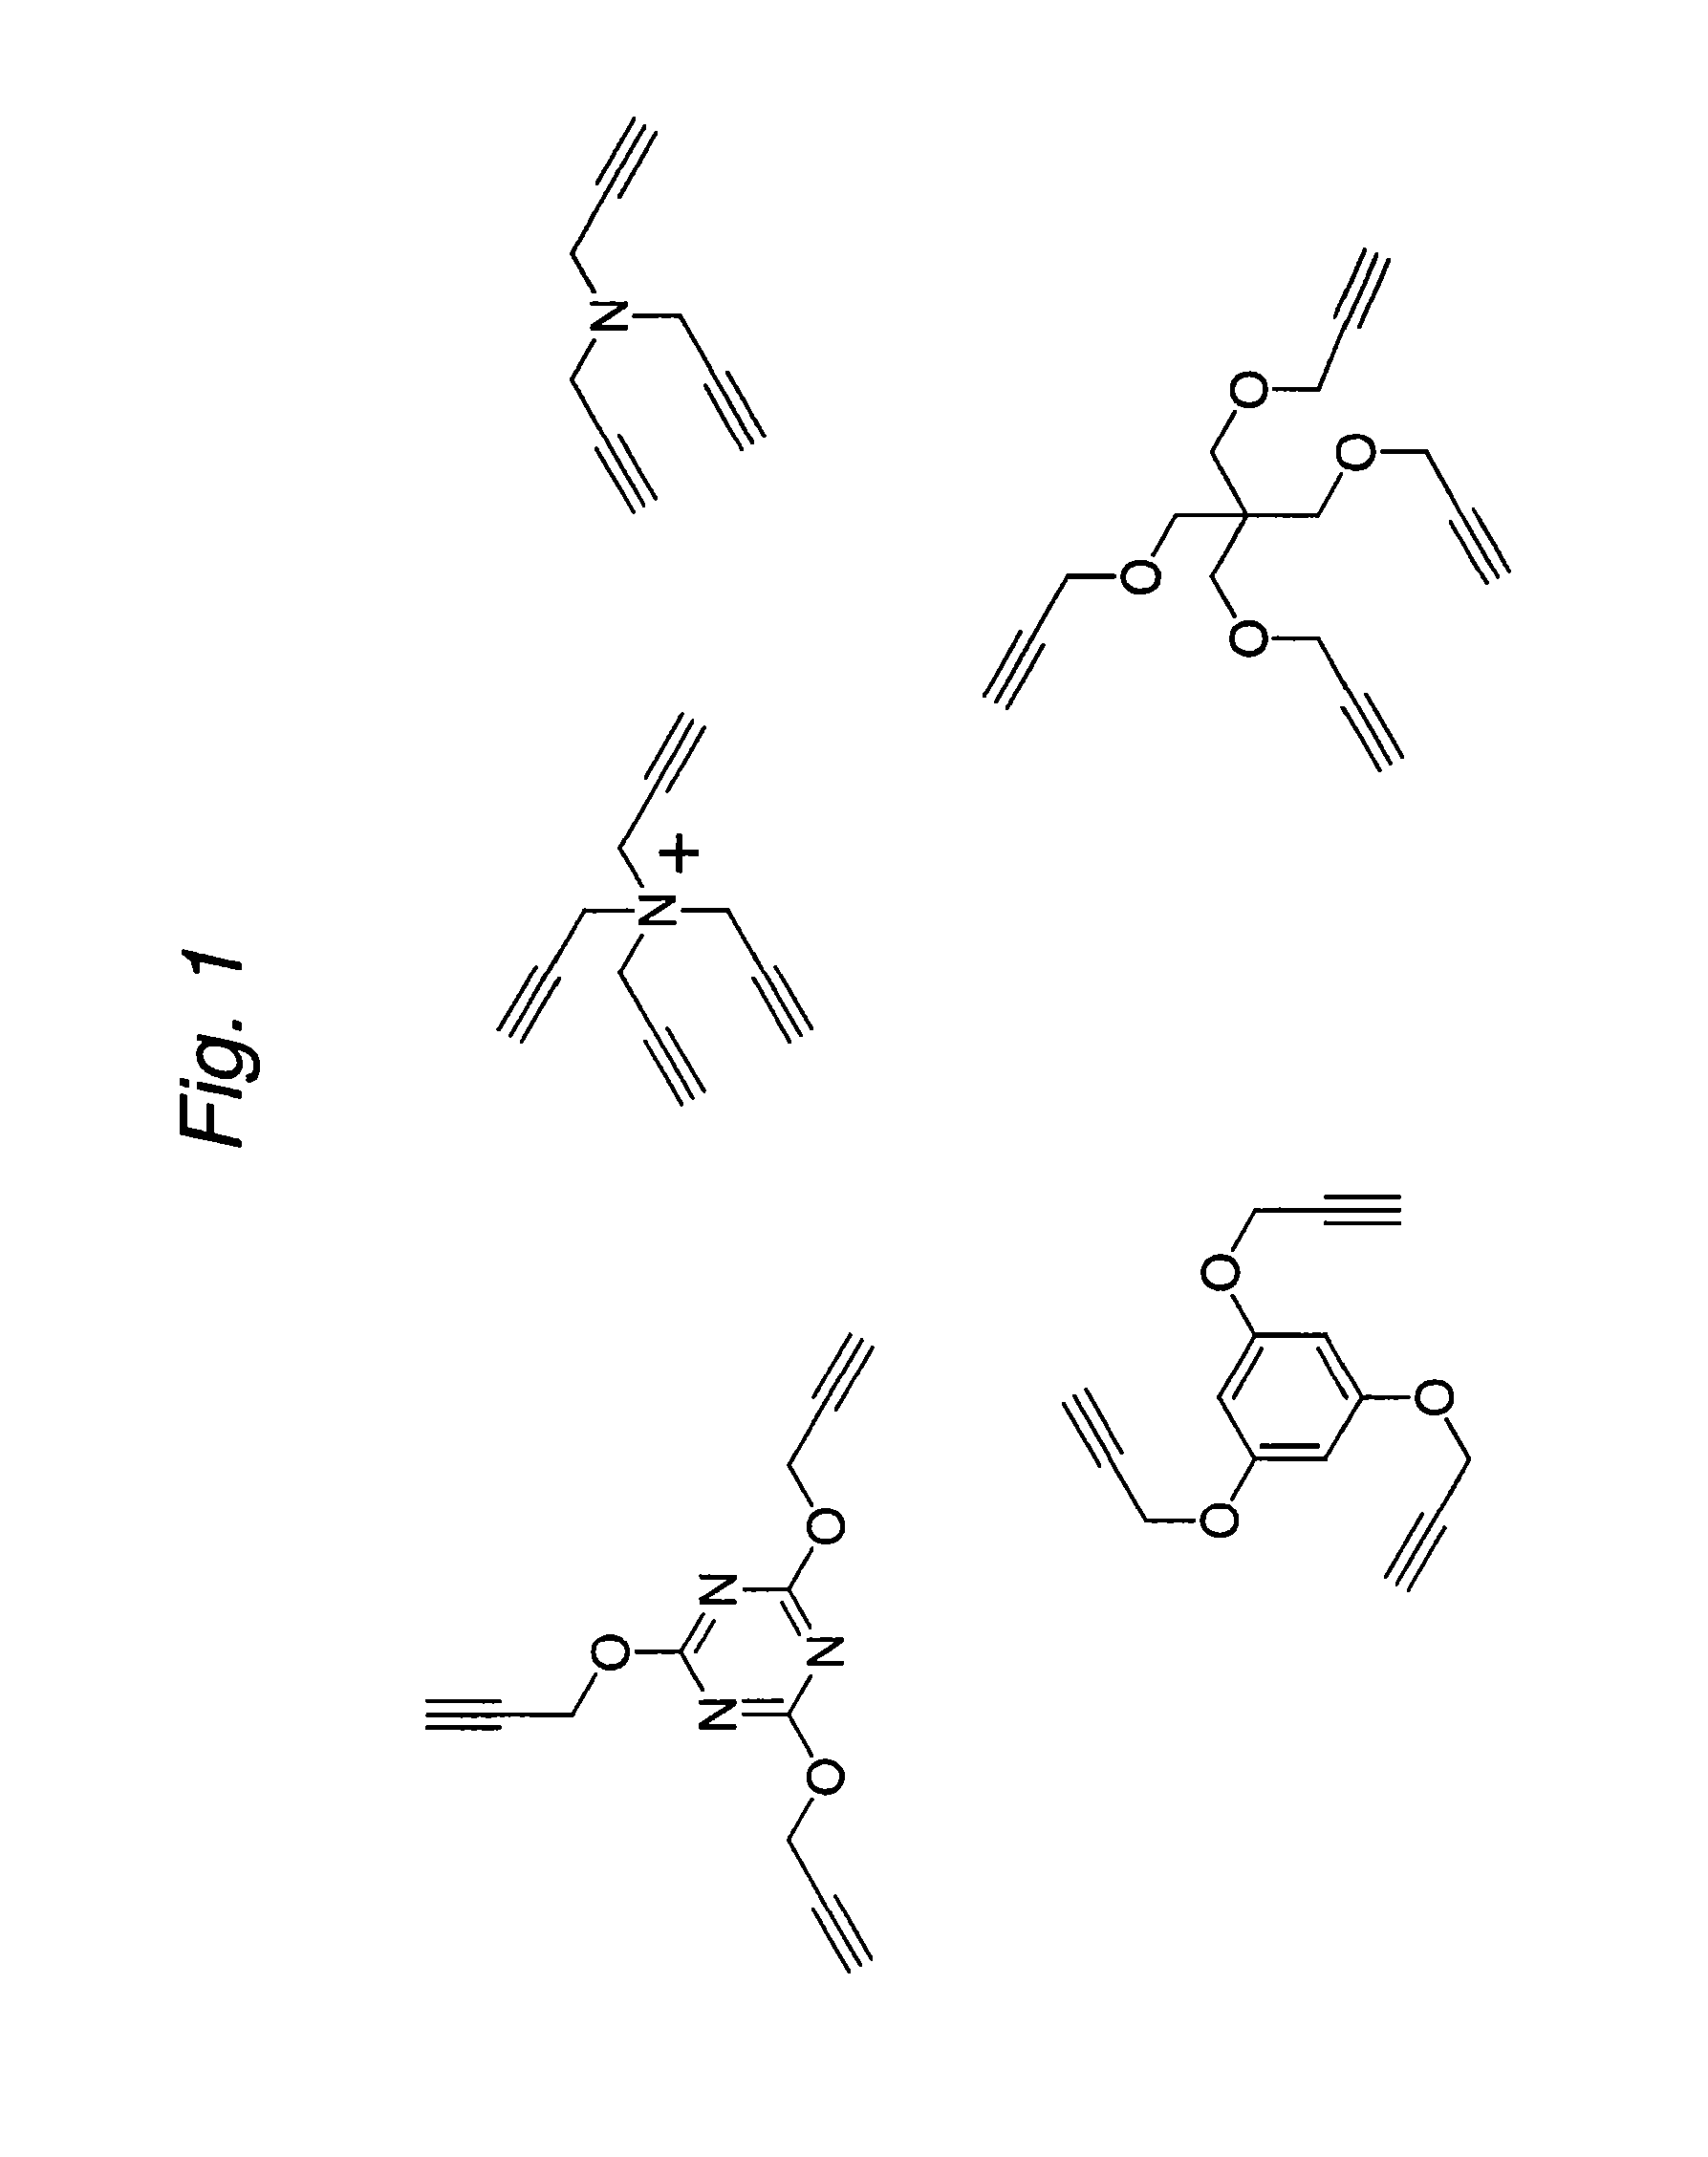 Construction of a multivalent scFv through alkyne-azide 1,3-dipolar cycloaddition